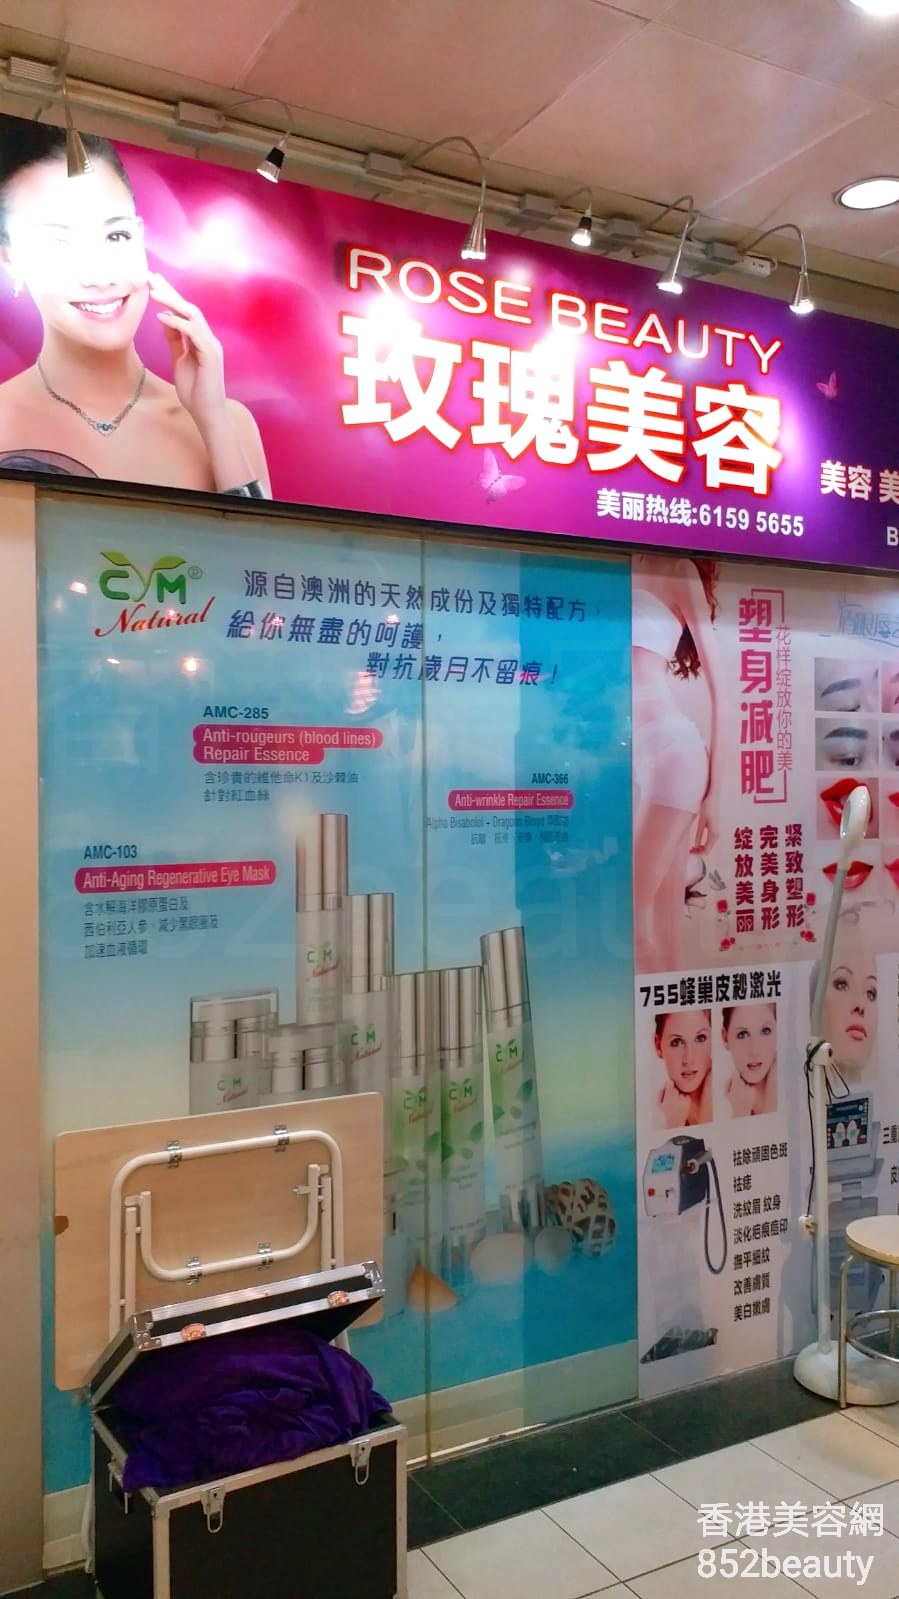 香港美容網 Hong Kong Beauty Salon 美容院 / 美容師: 玫瑰美容